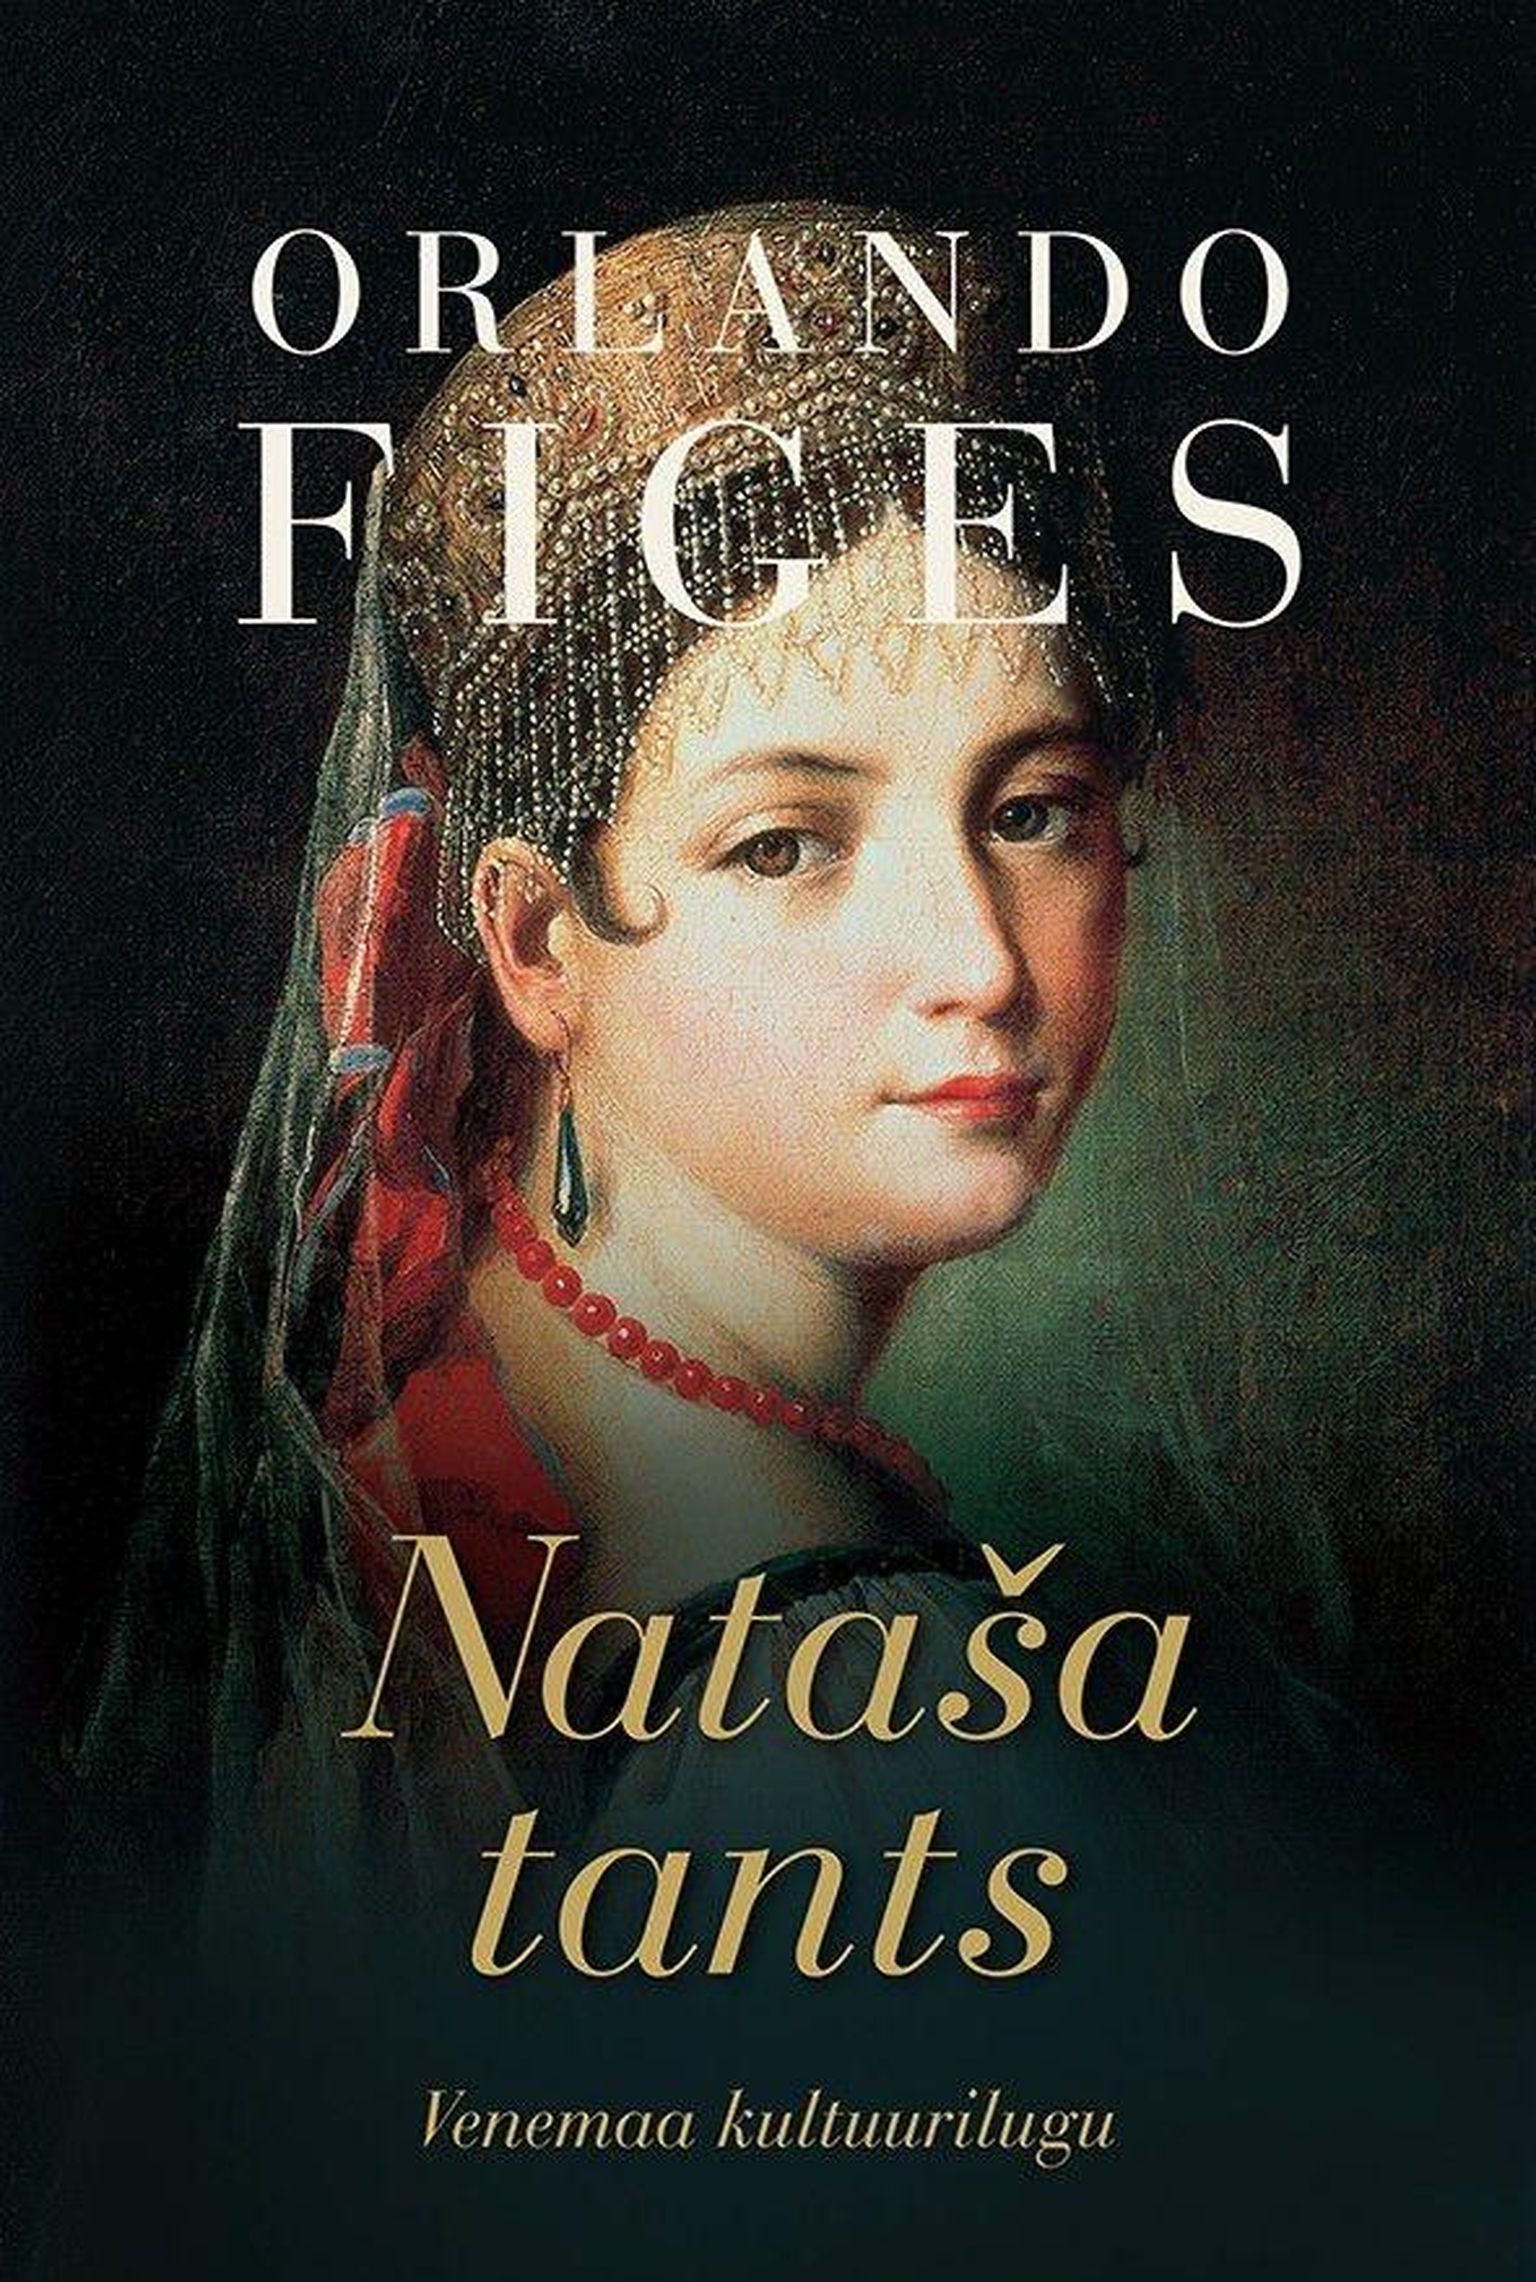 Orlando Figes, "Nataša tants. Venemaa kultuurilugu"
Inglise keelest tõlkinud Virve Krimm.
714 lehekülge.
Kirjastus Varrak